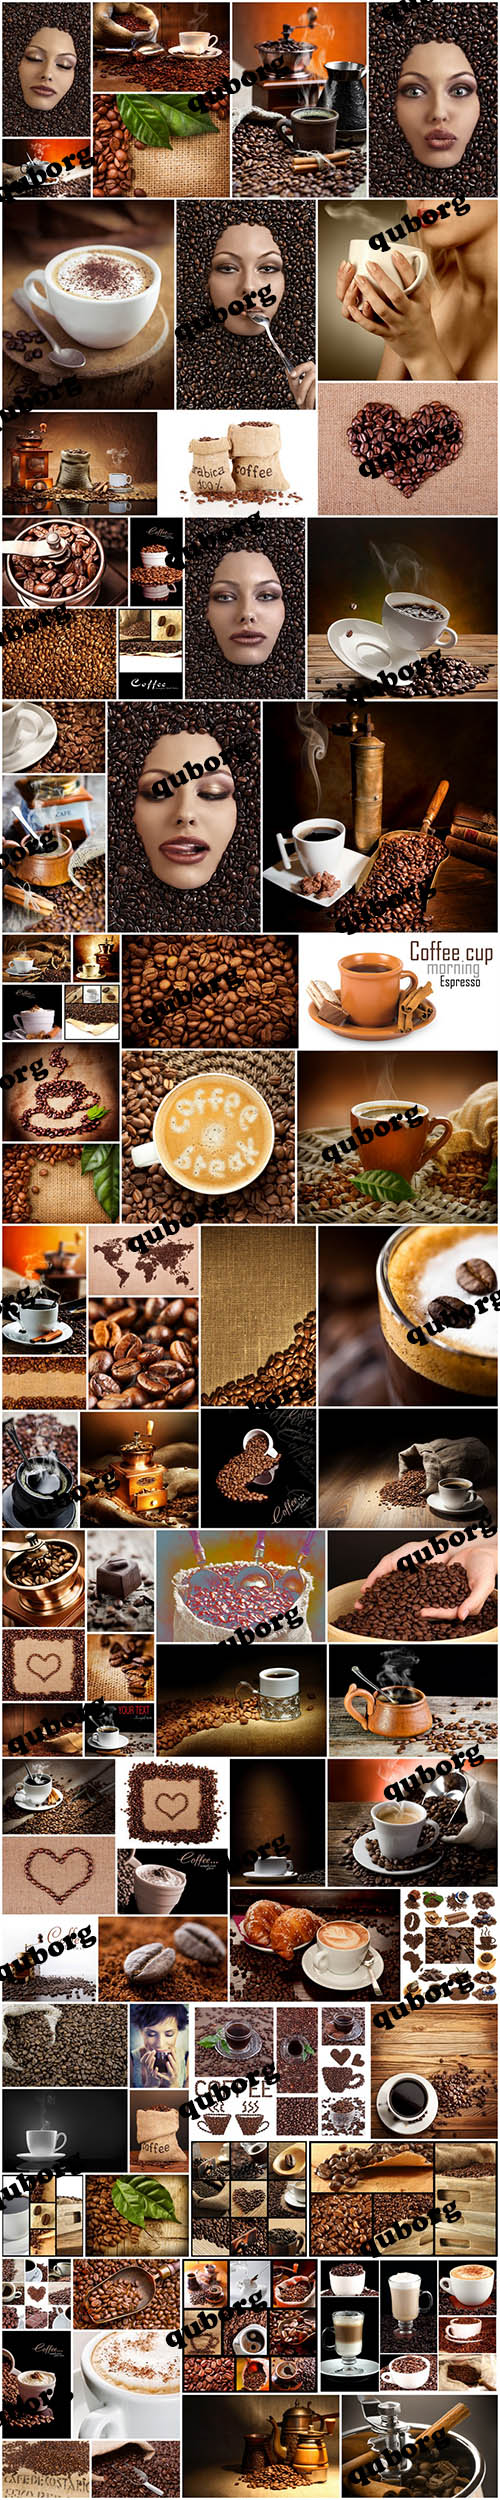 Stock Photos - Coffee collection